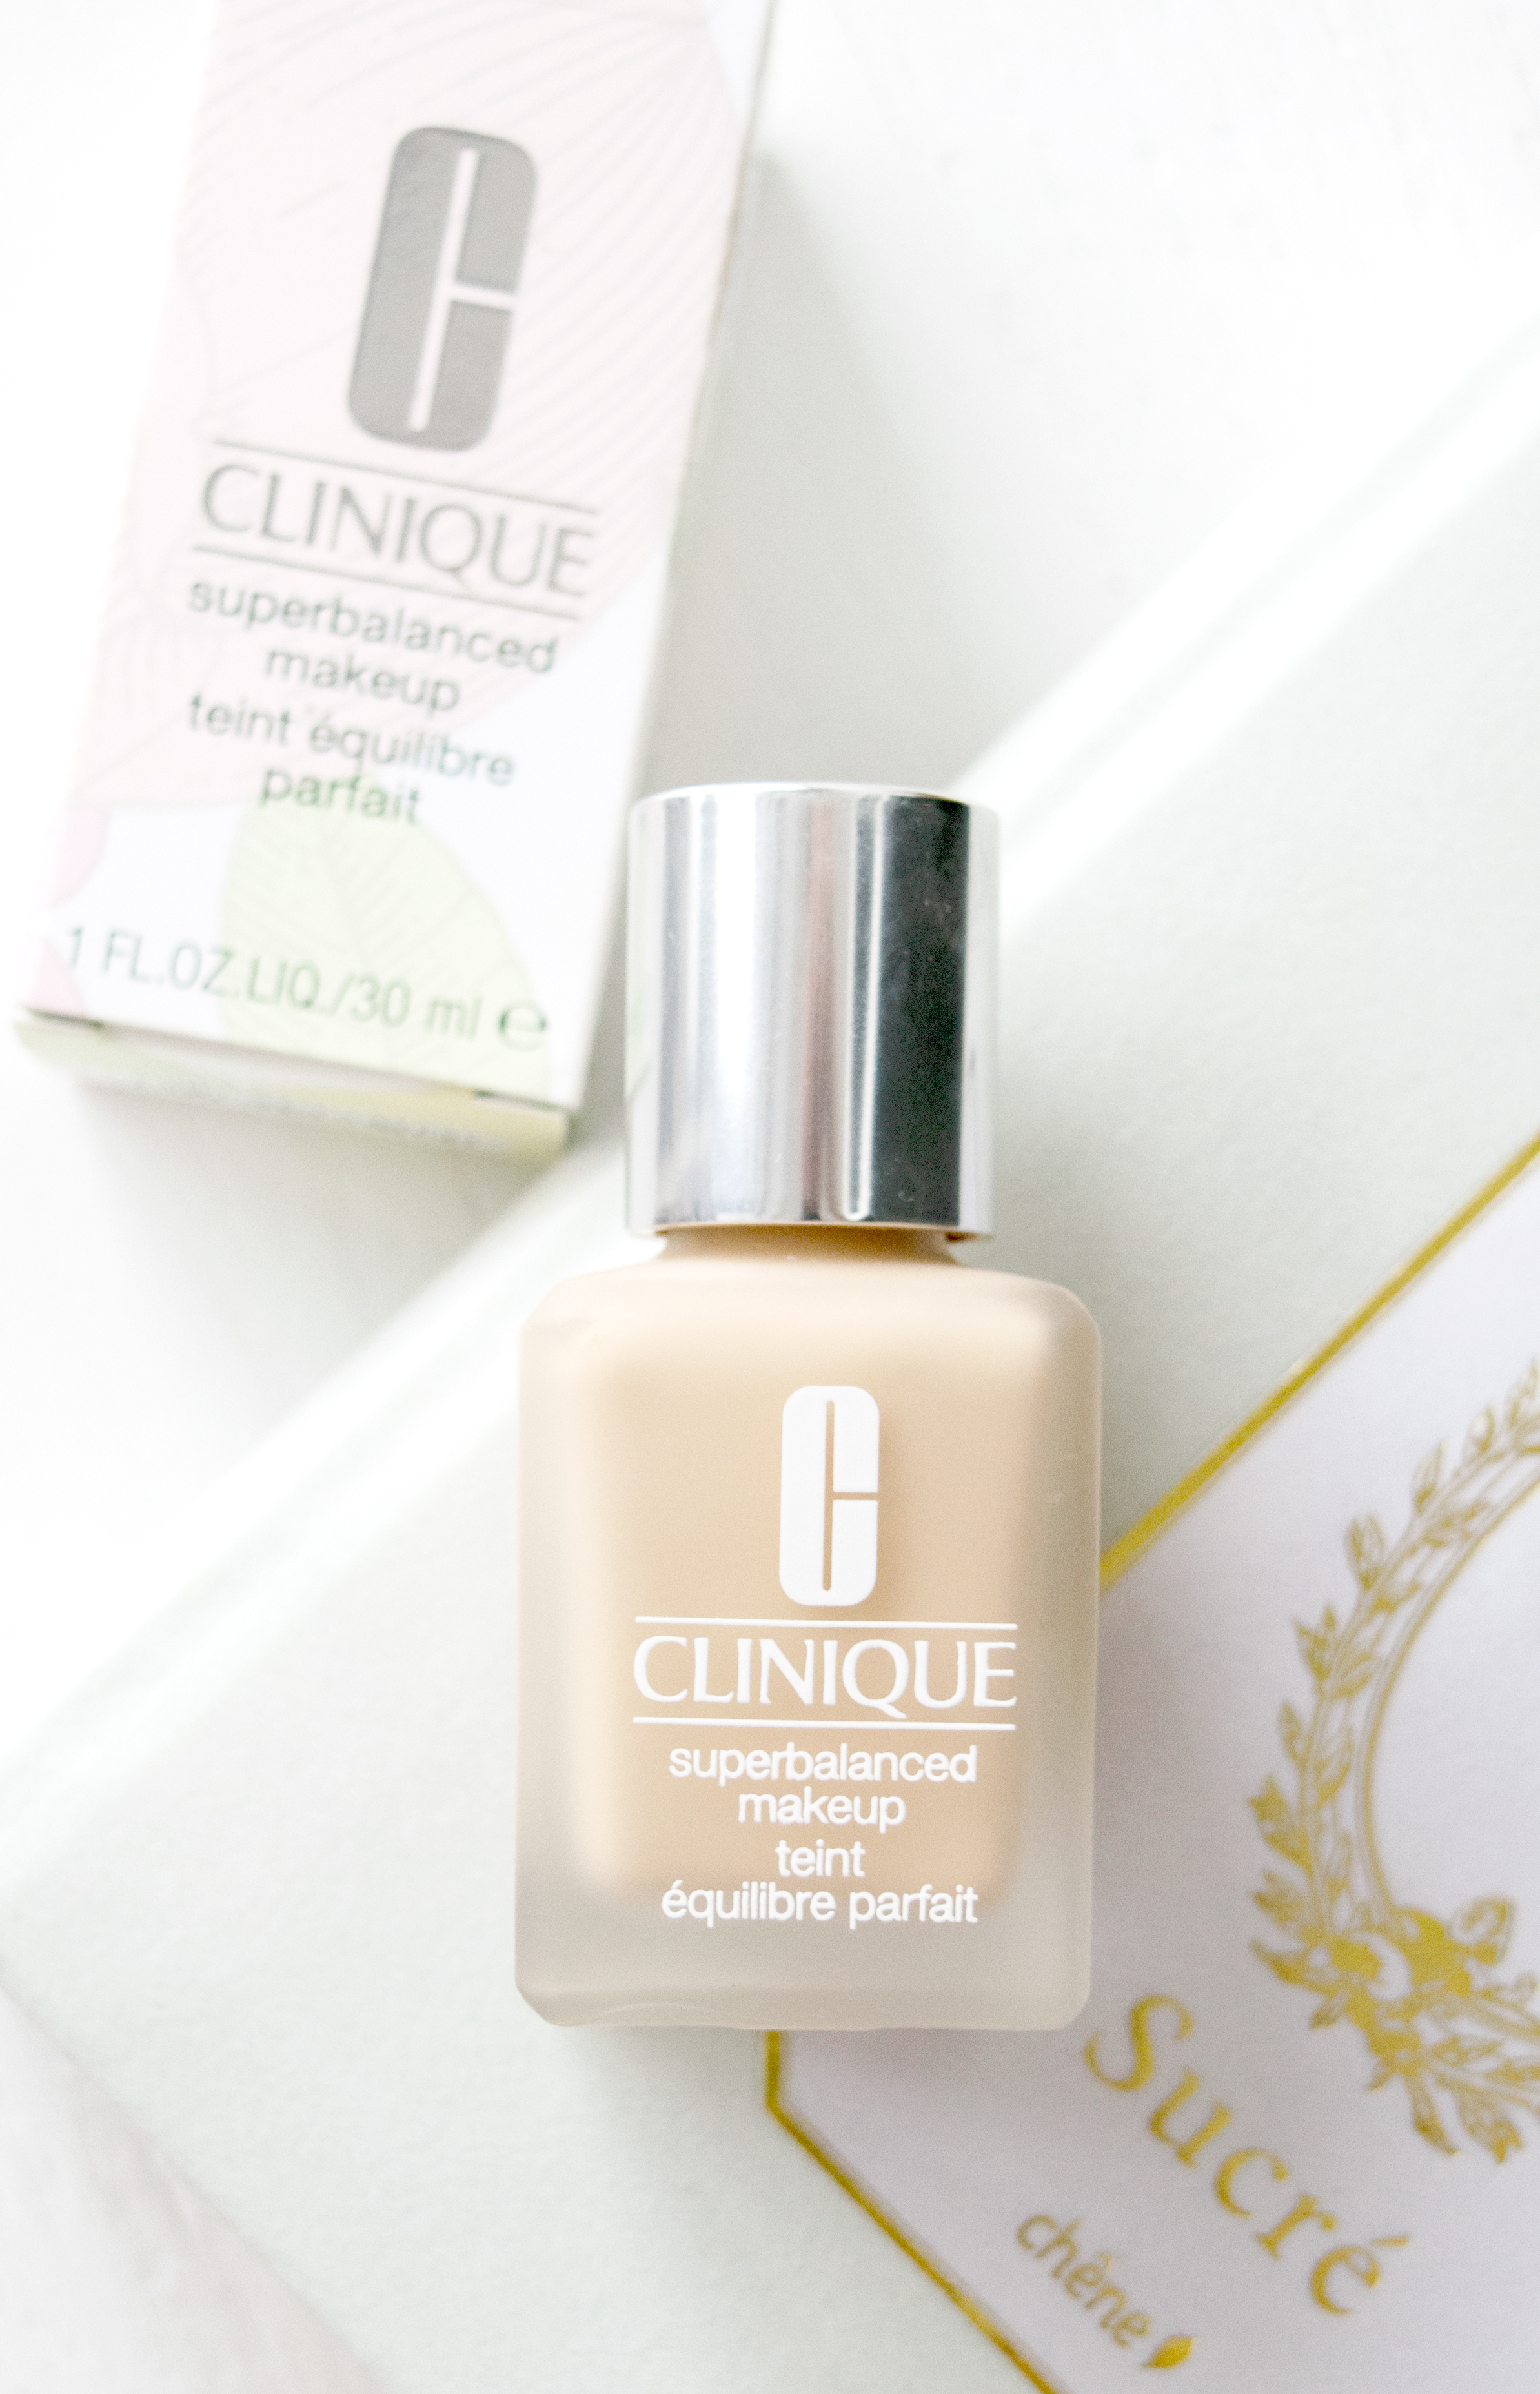 The Clinique Makeup: Oily & Sensitive Skin's Friend